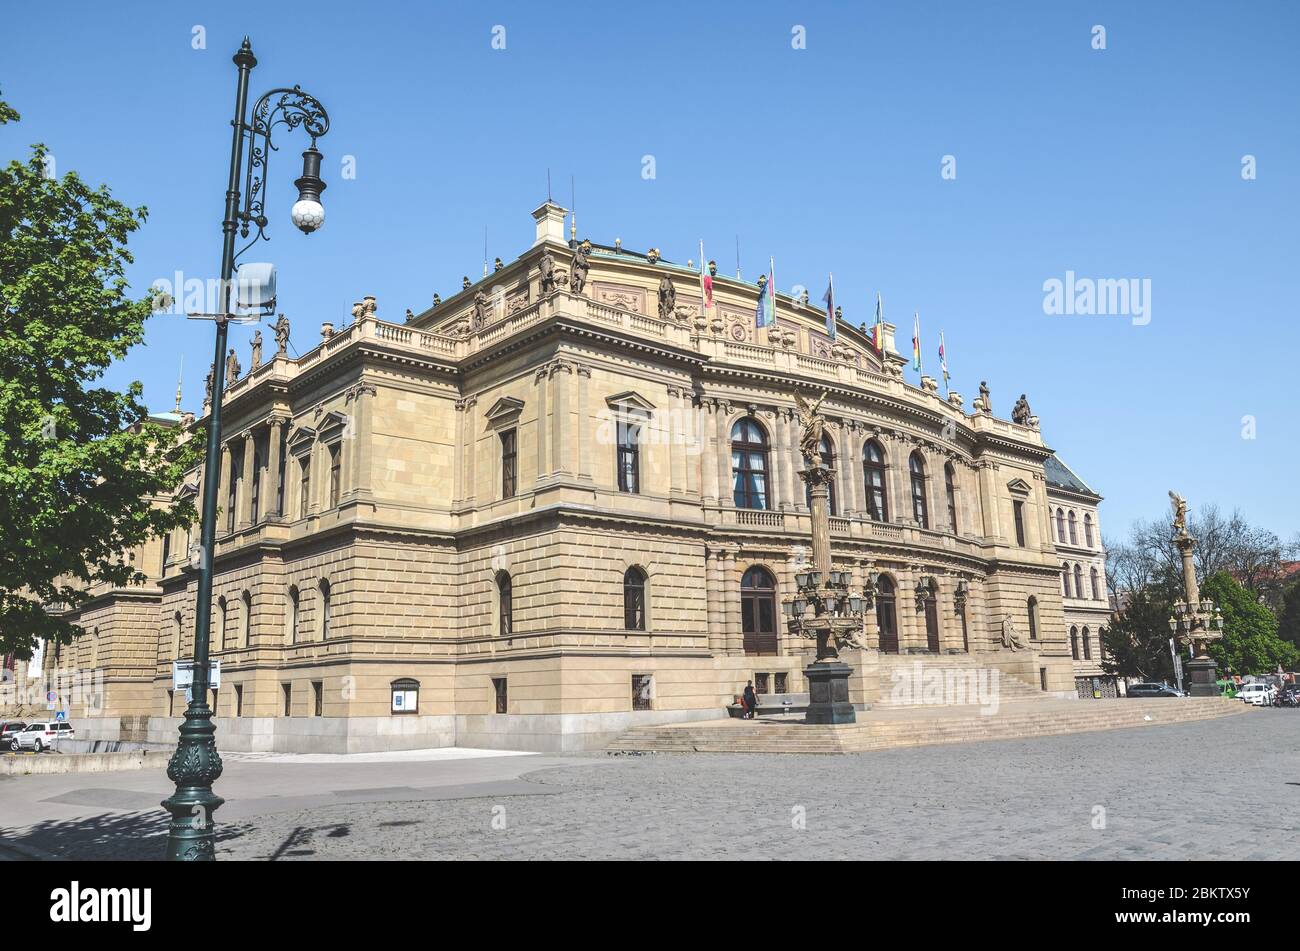 Praga, Repubblica Ceca - 23 aprile 2020: Edificio storico in stile neo-rinascimentale di Rudolfinum, sala concerti e sede dell'Orchestra Filarmonica Ceca. Foto orizzontale. Foto Stock